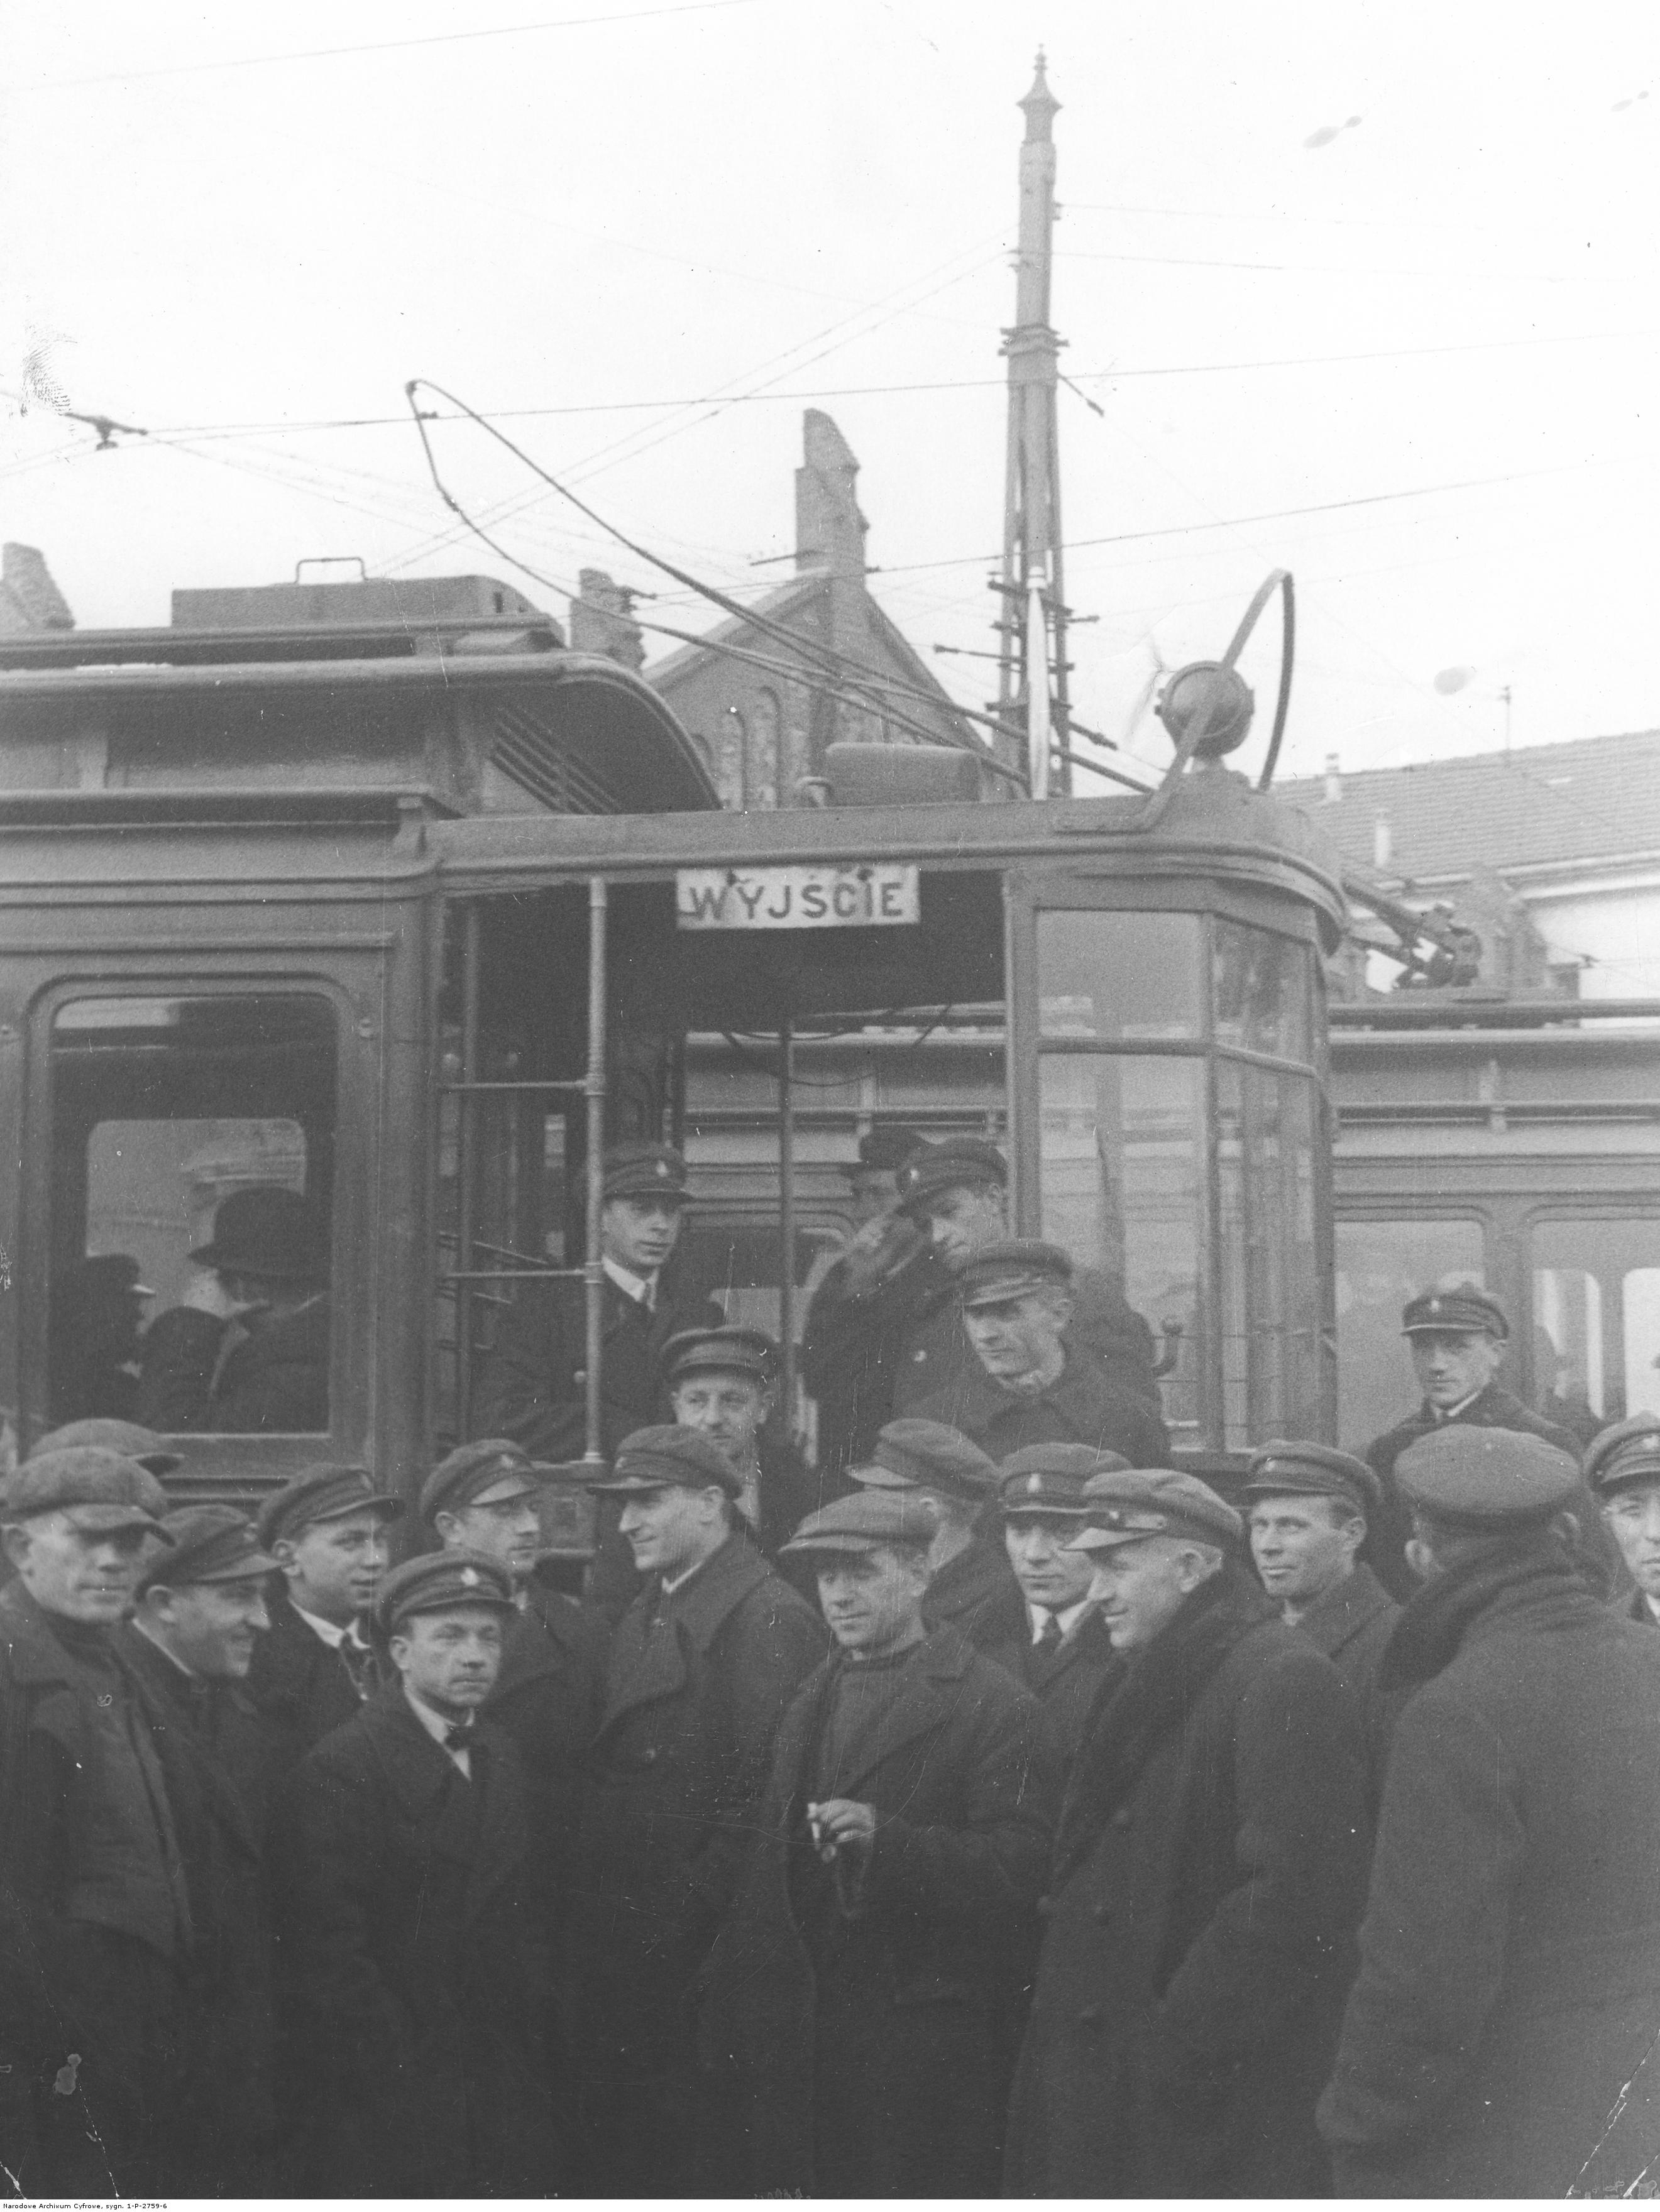 Strajk tramwajarzy warszawskich (1931)